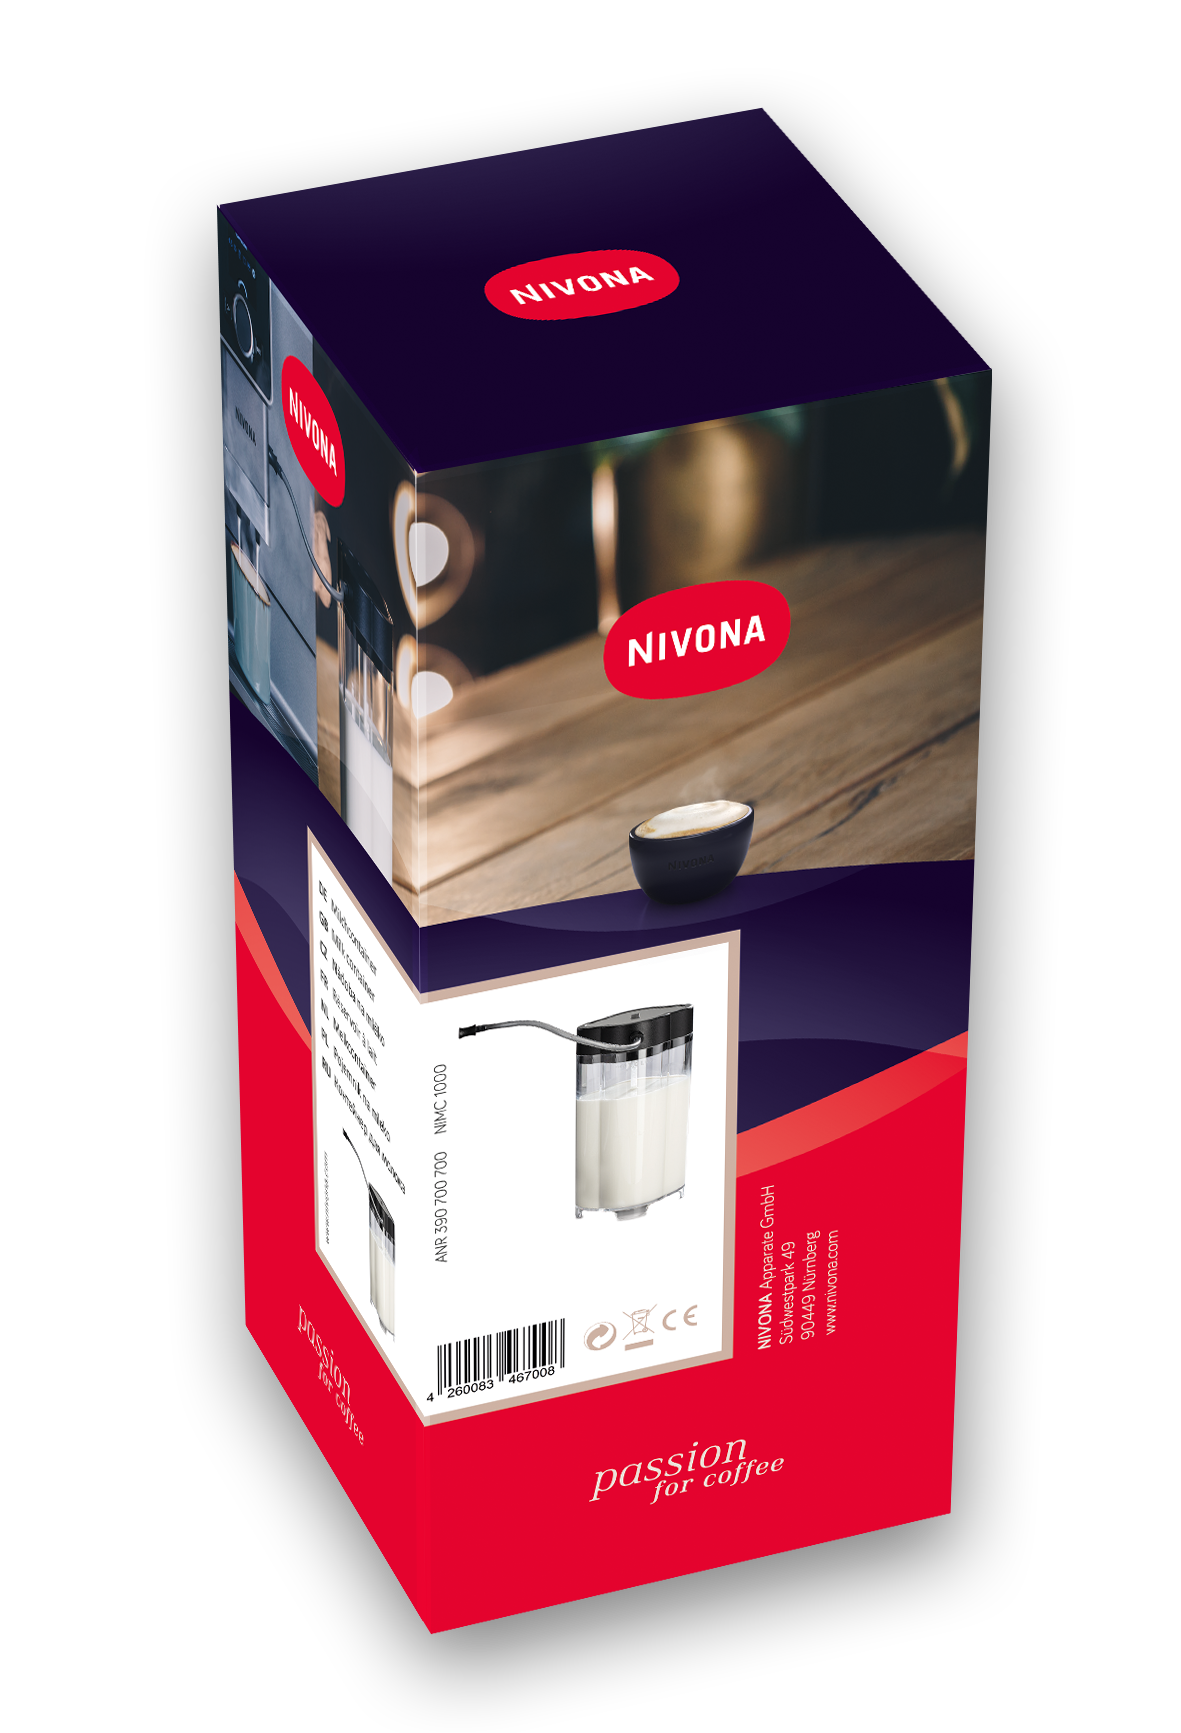 Milchcontainer Nivona Kunststoff Kleeblatt